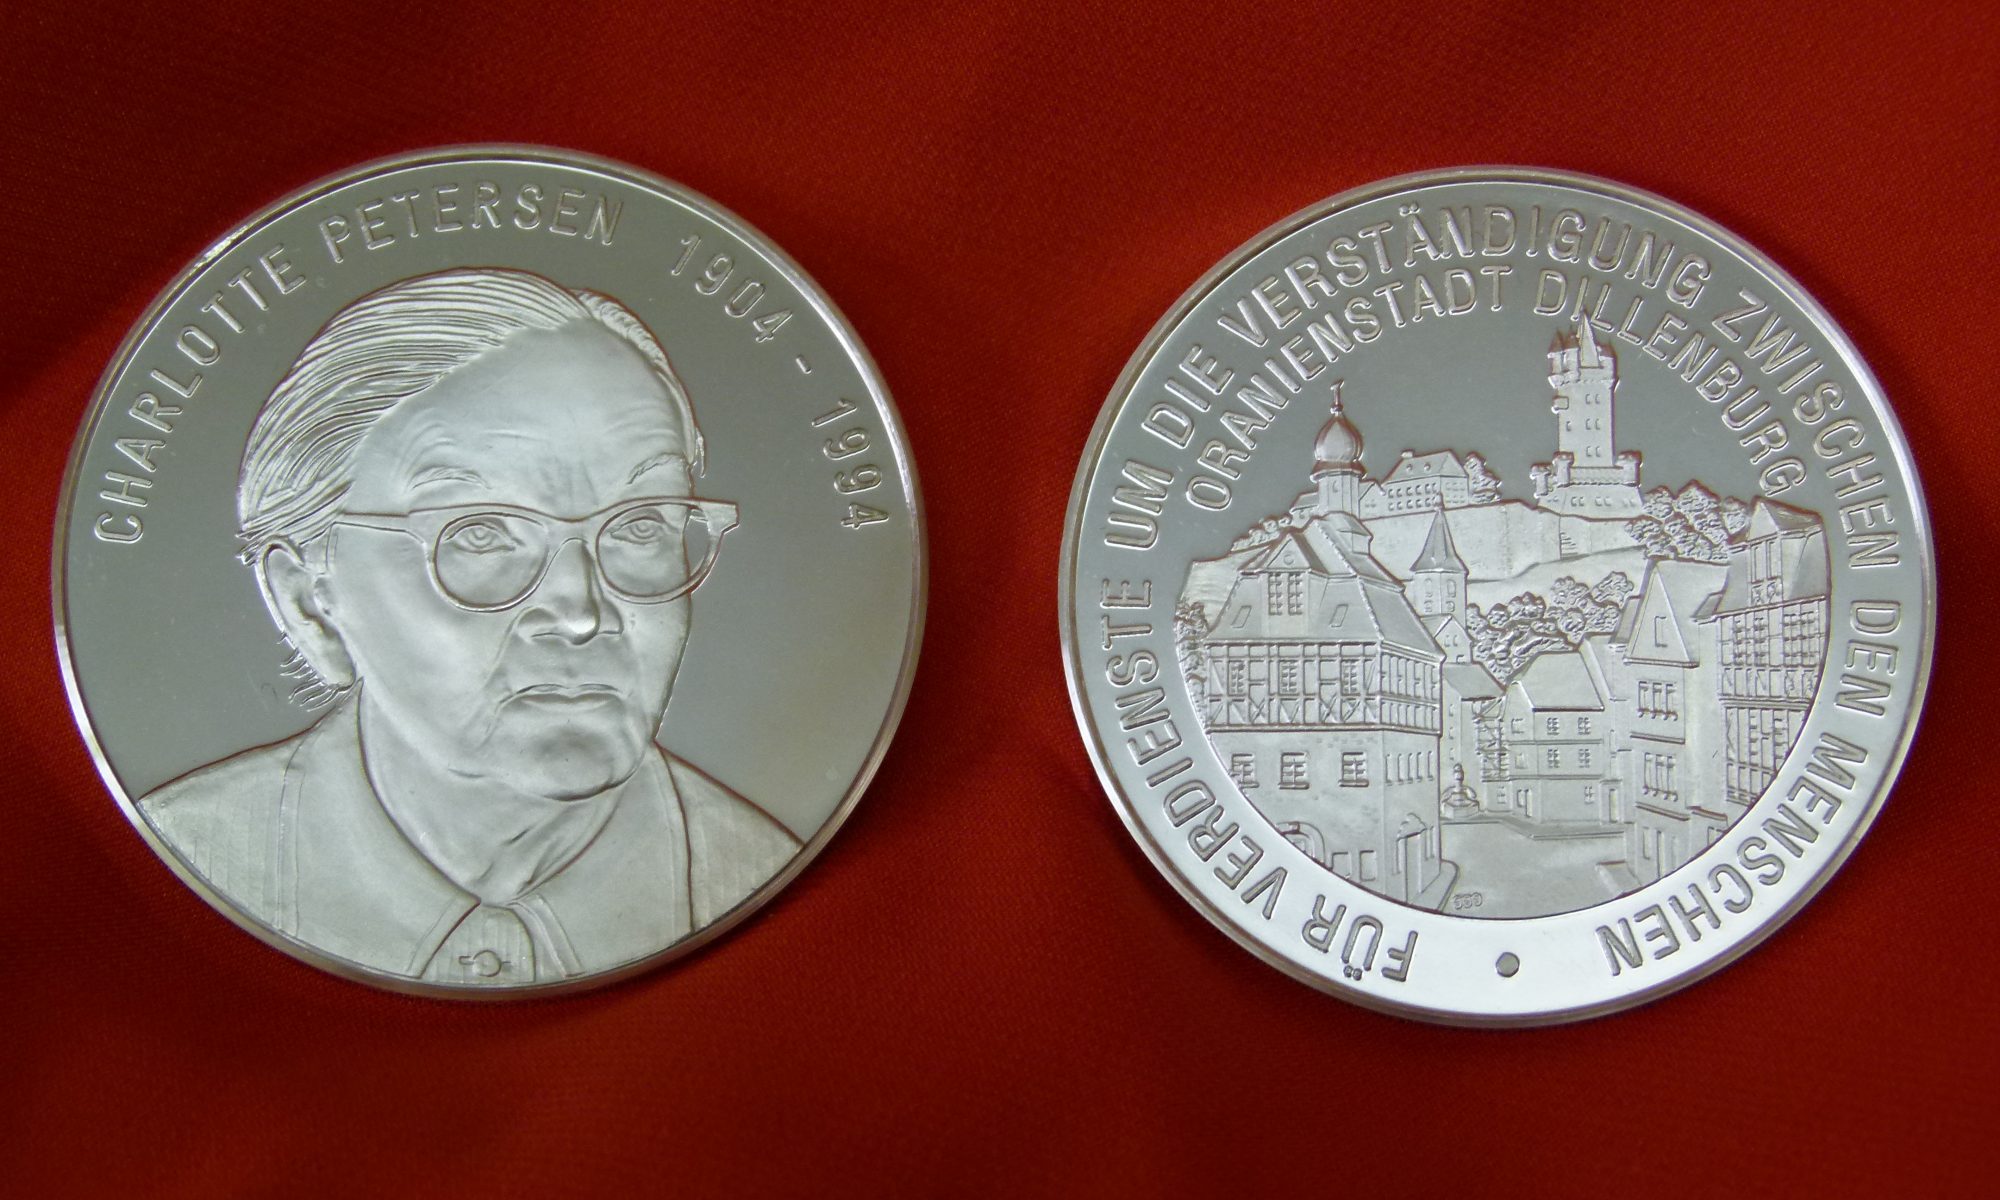 Charlotte-Petersen-Medaille. Mit einem Klick gehts zur Veranstaltung "Verleihung der Charlotte-Petersen-Medaille an Christoph Heubner".